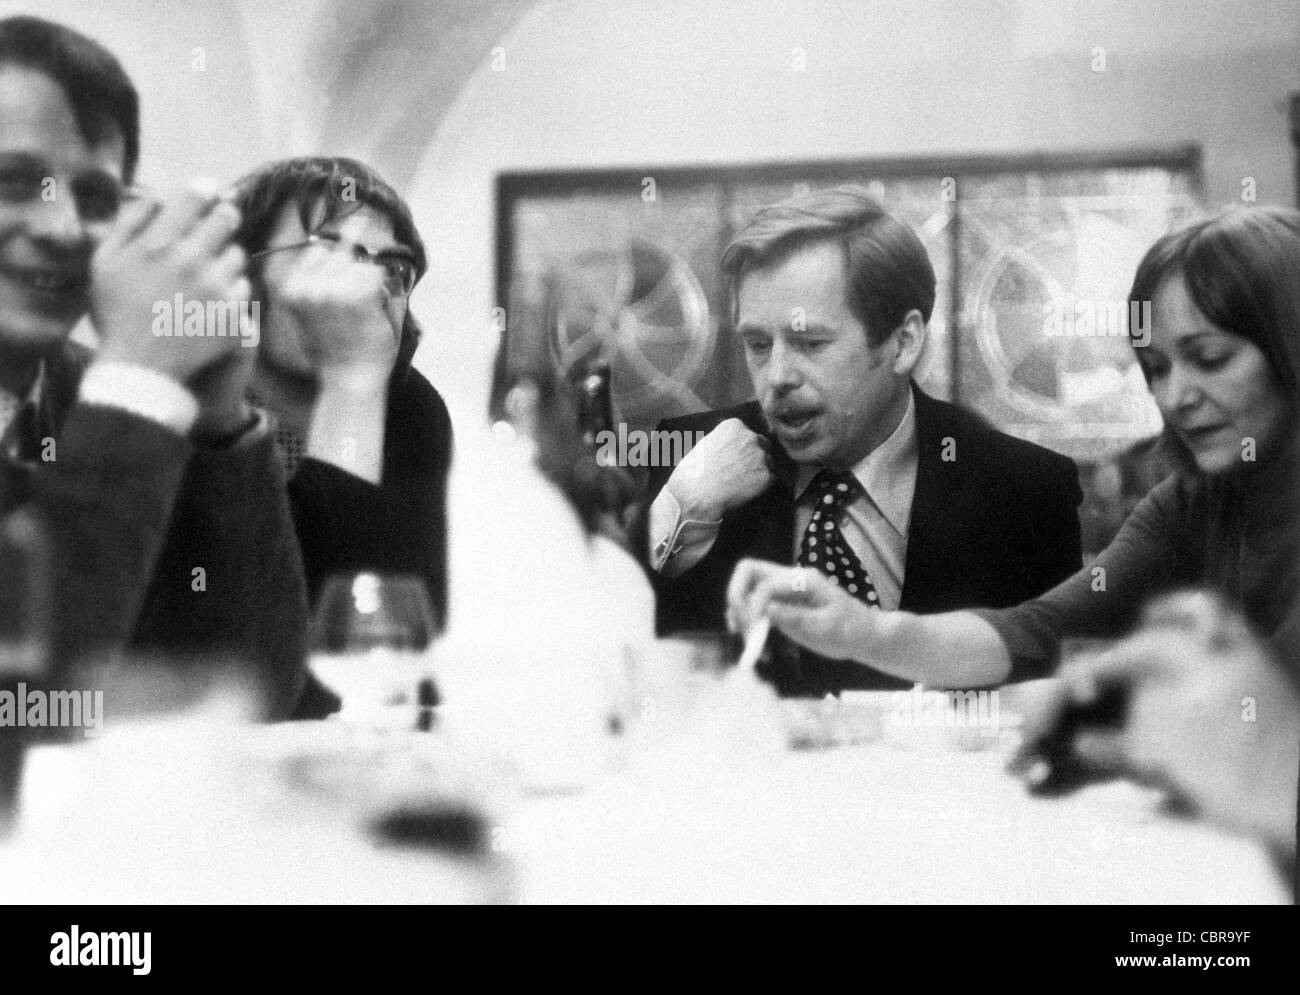 ARCHIVFOTO von 1977 *** von links nach rechts, tschechoslowakischen Dissidenten Petr Uhl, Jiri Nemec, Dramatiker Vaclav Havel und Stockfoto